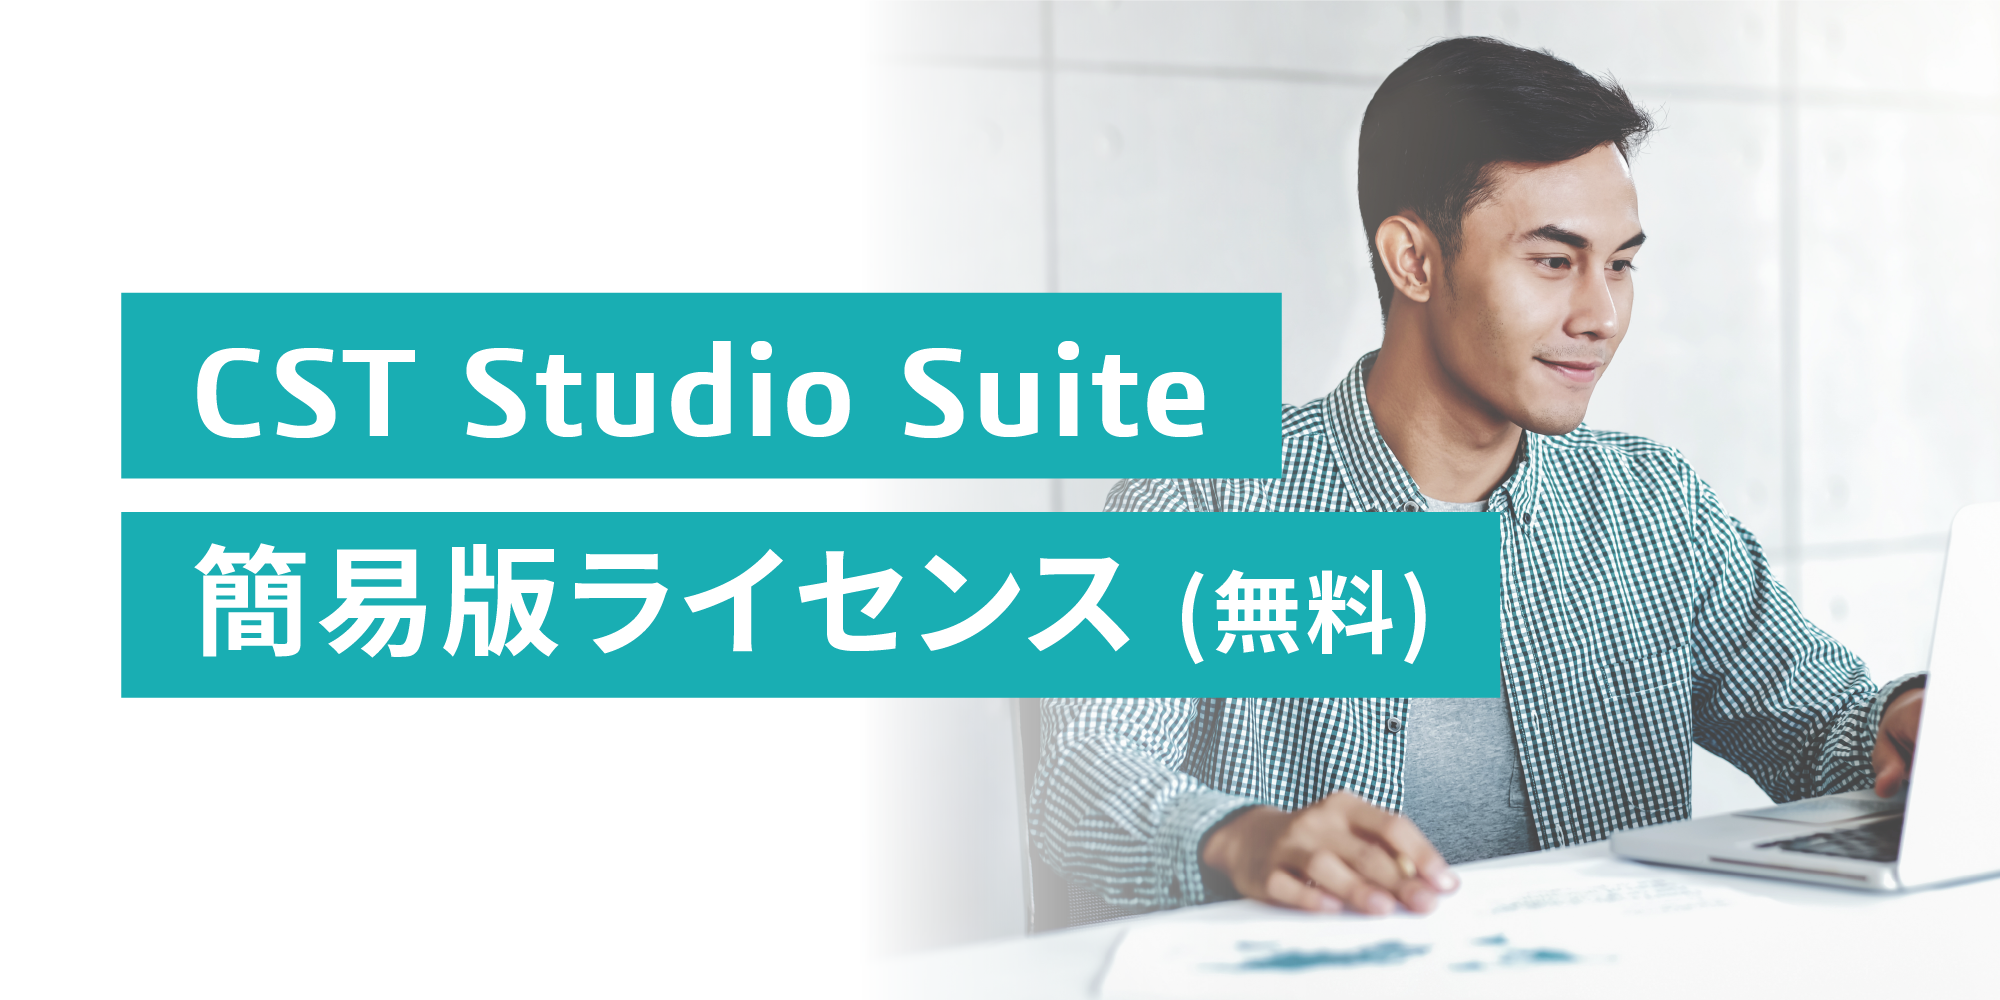 CST Studio Suite 簡易版ライセンス(無料)